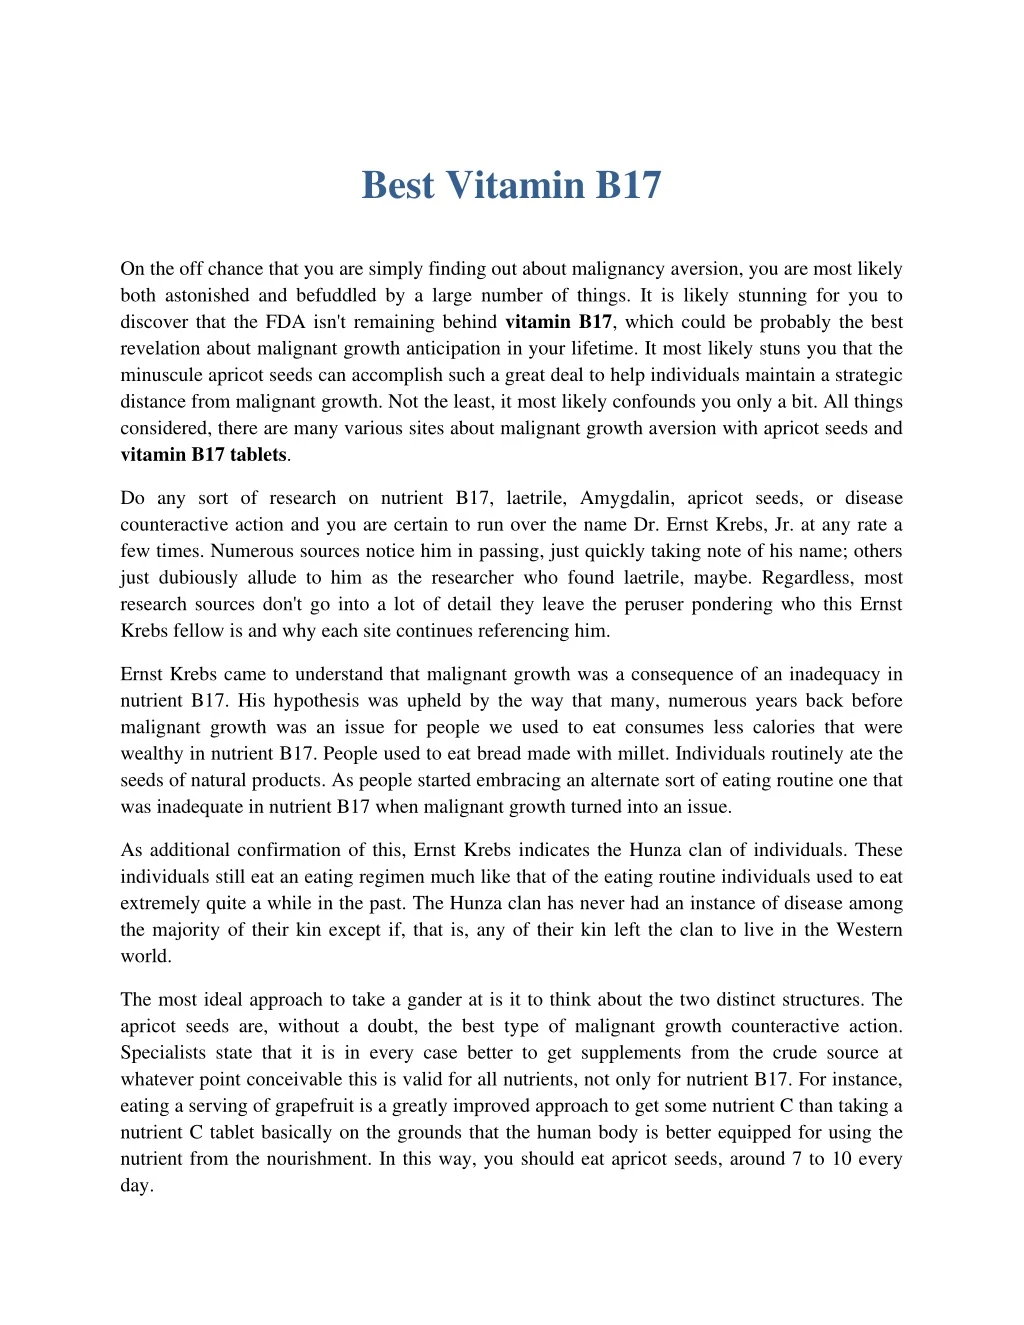 best vitamin b17